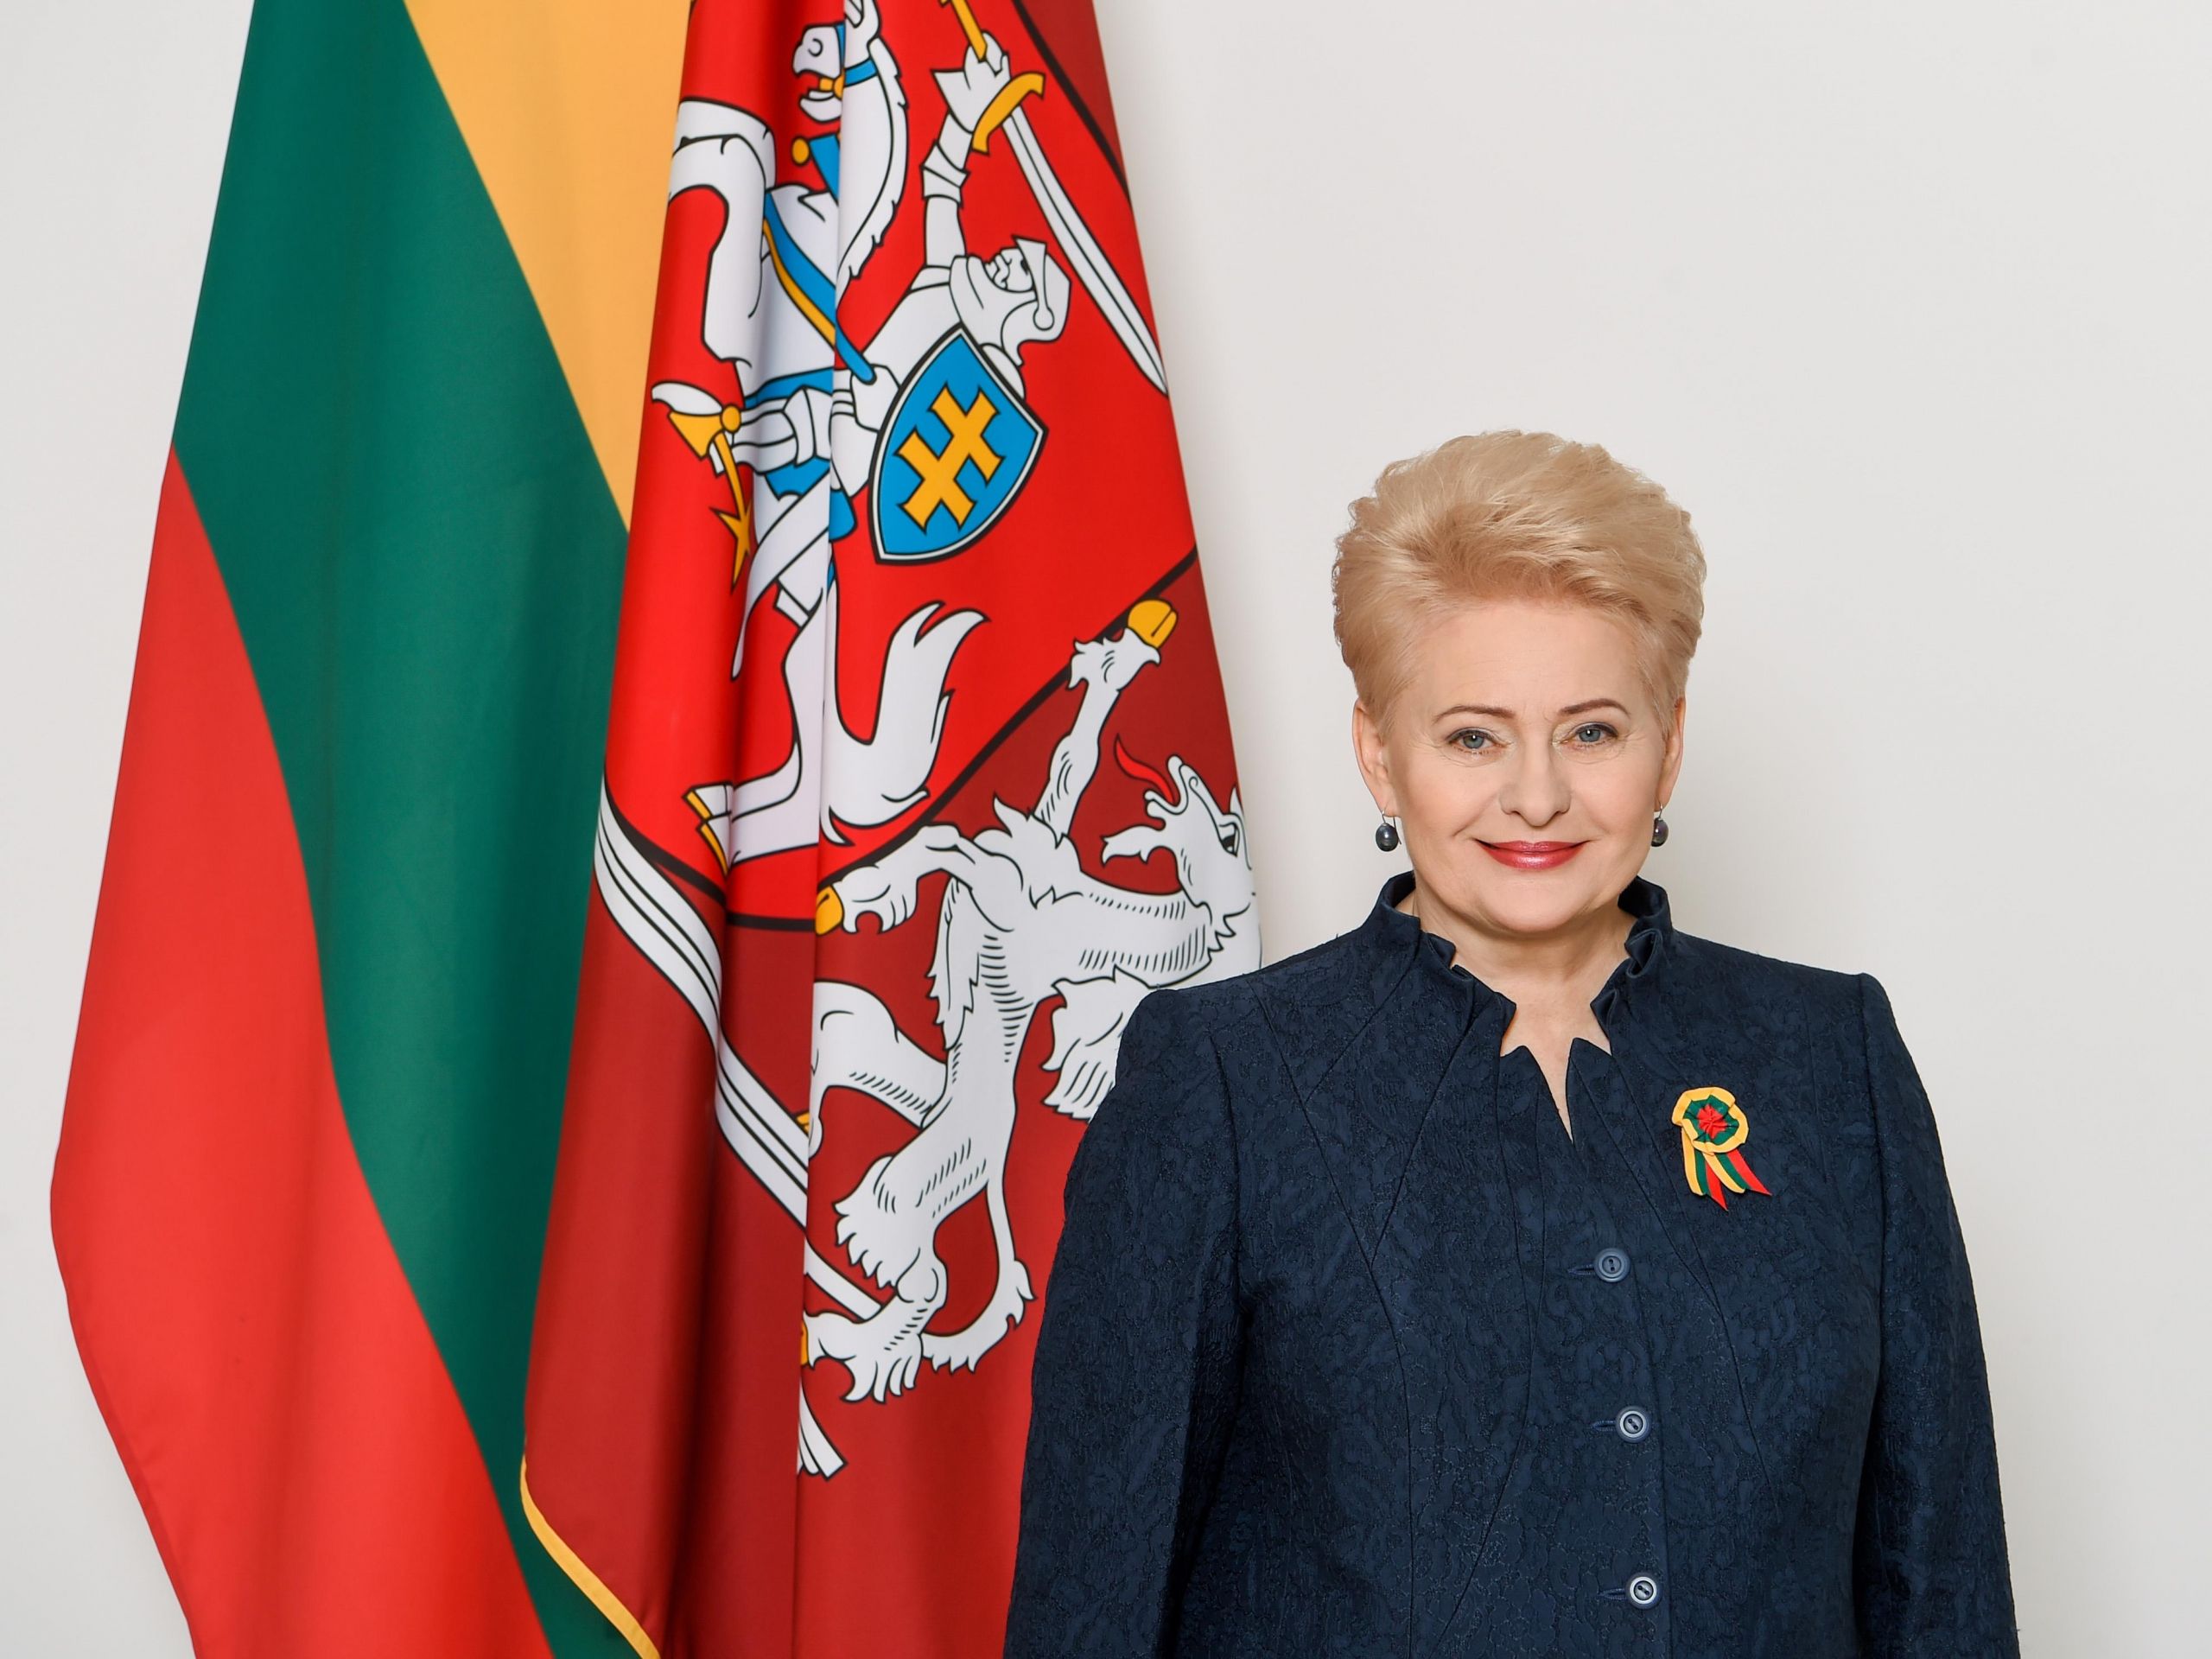 Lietuvos Respublikos Prezidentės Dalios Grybauskaitės sveikinimas Vasario 16-osios proga / Dalia Grybauskaitė